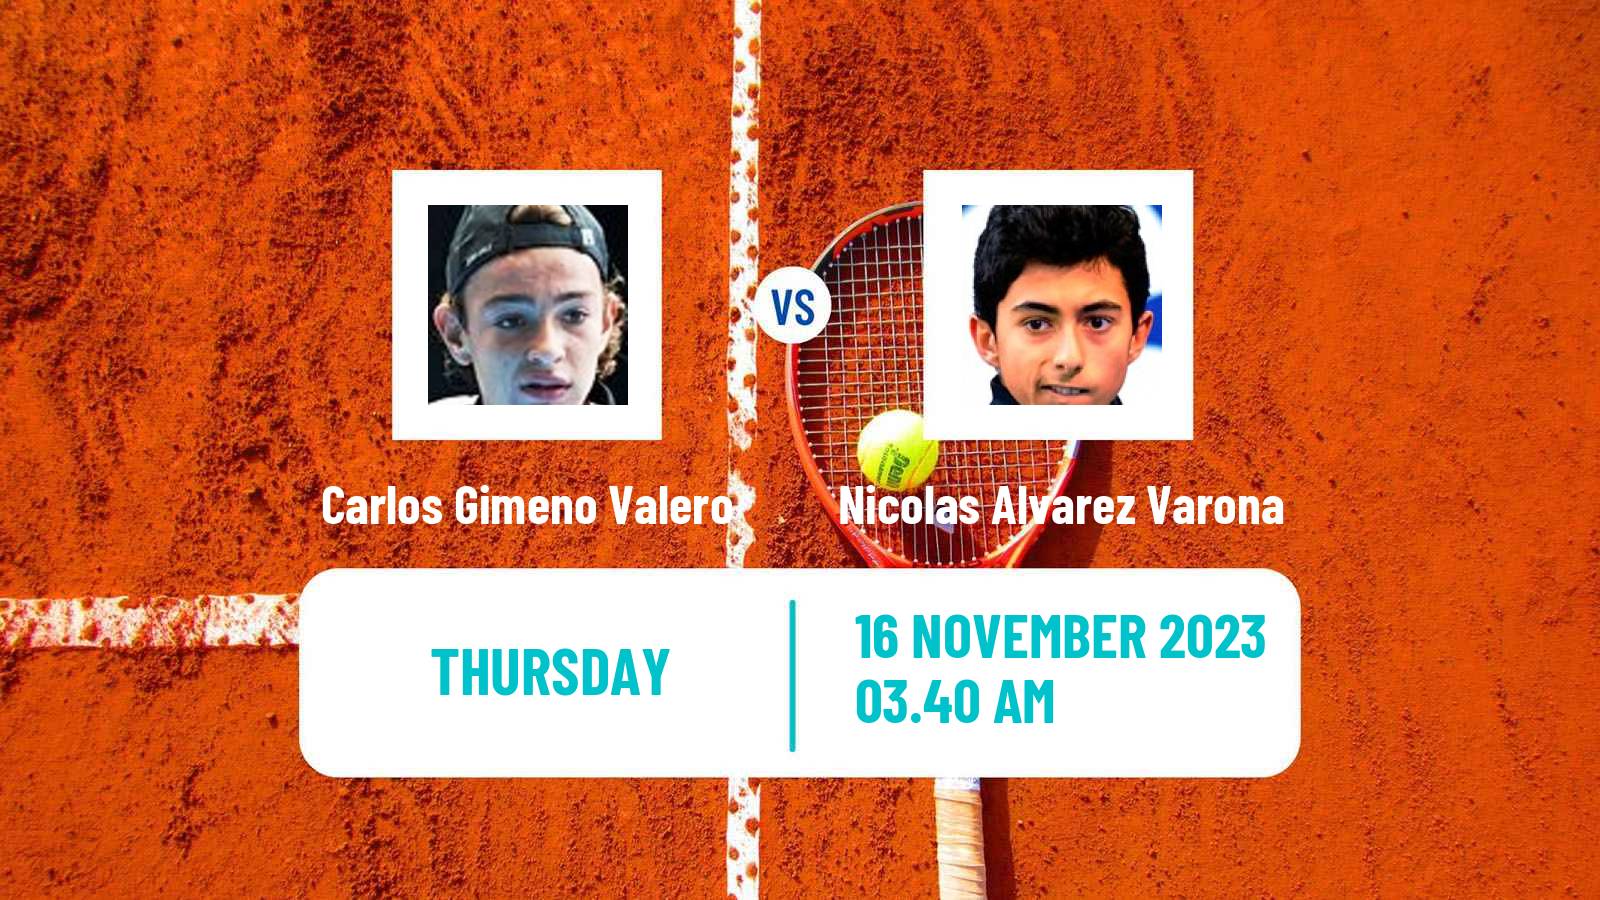 Tennis ITF M15 Valencia Men Carlos Gimeno Valero - Nicolas Alvarez Varona